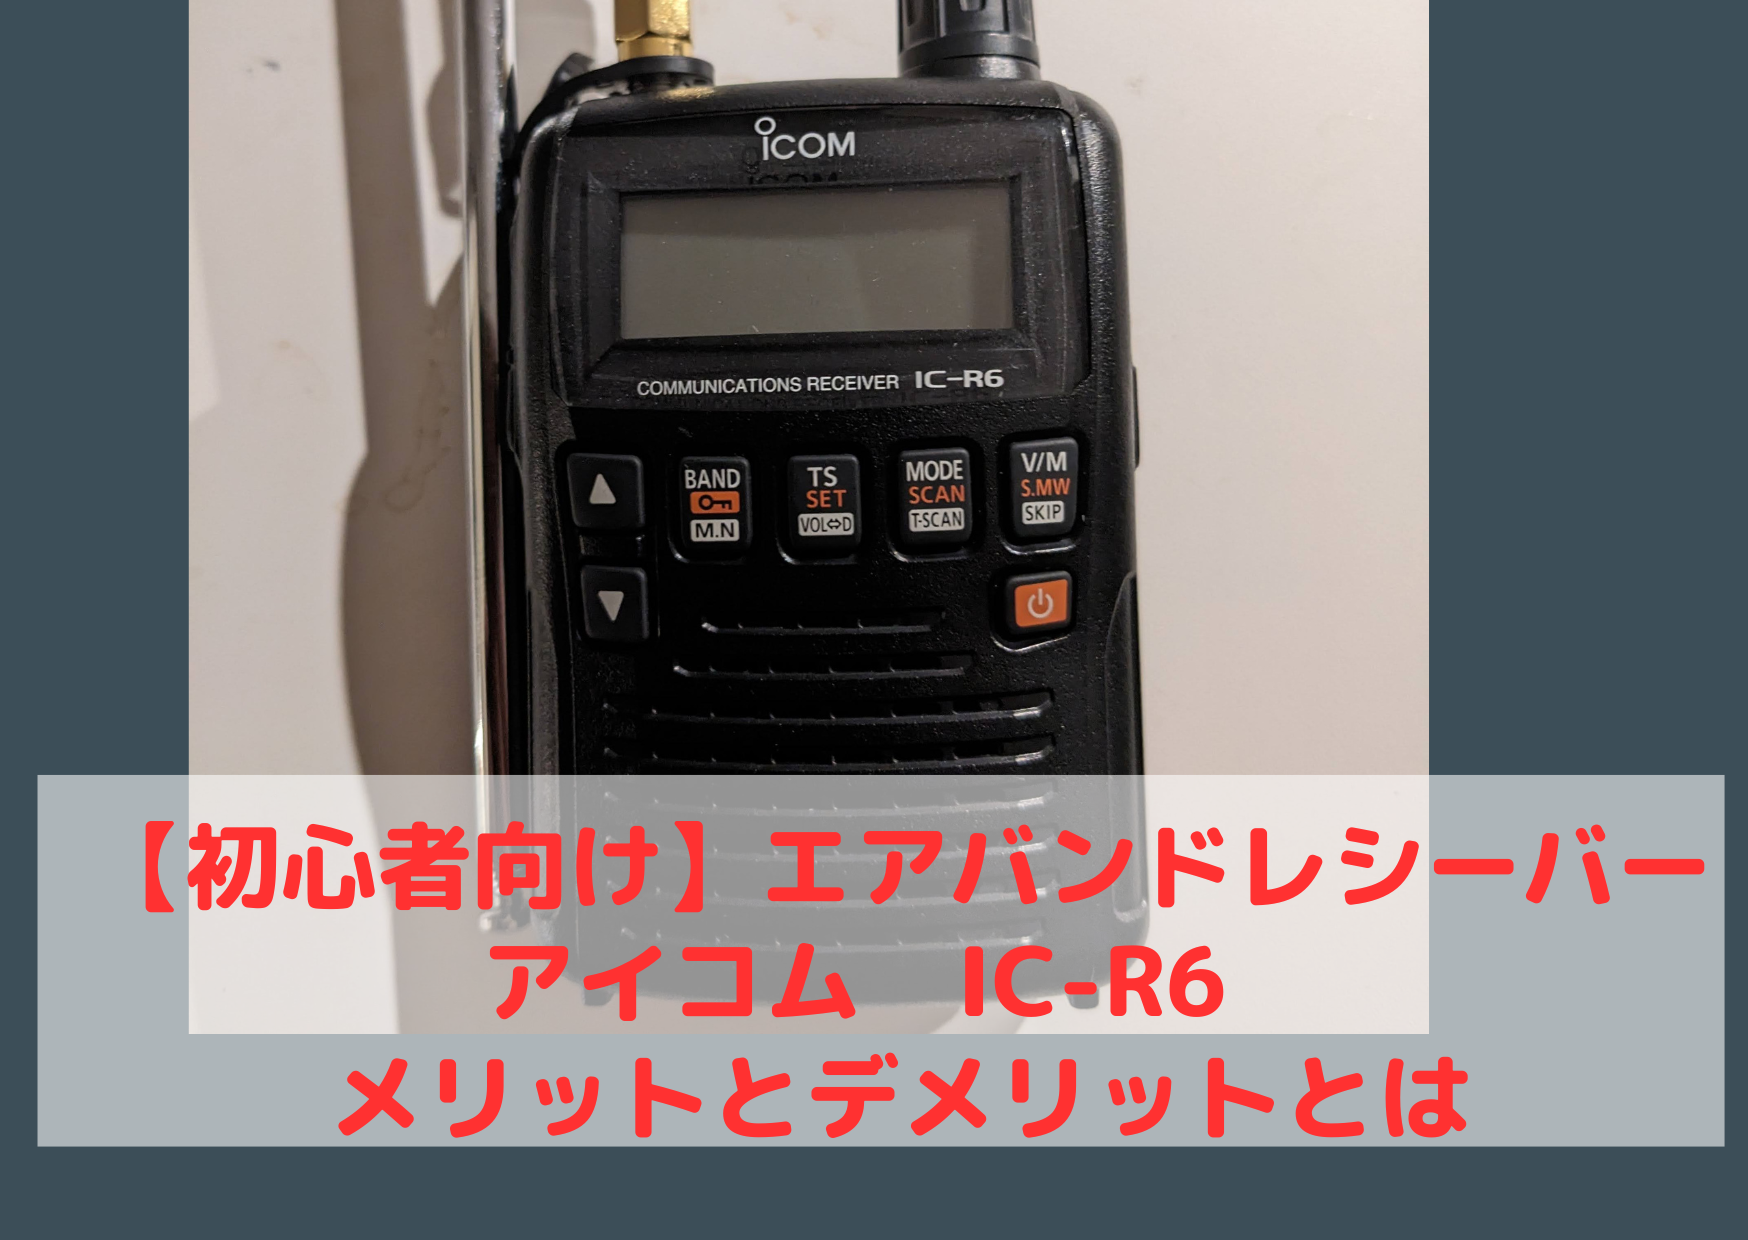 【美品級】Icom IC-R6 広帯域受信機 無線 エアバンド 航空無線 ラジオ